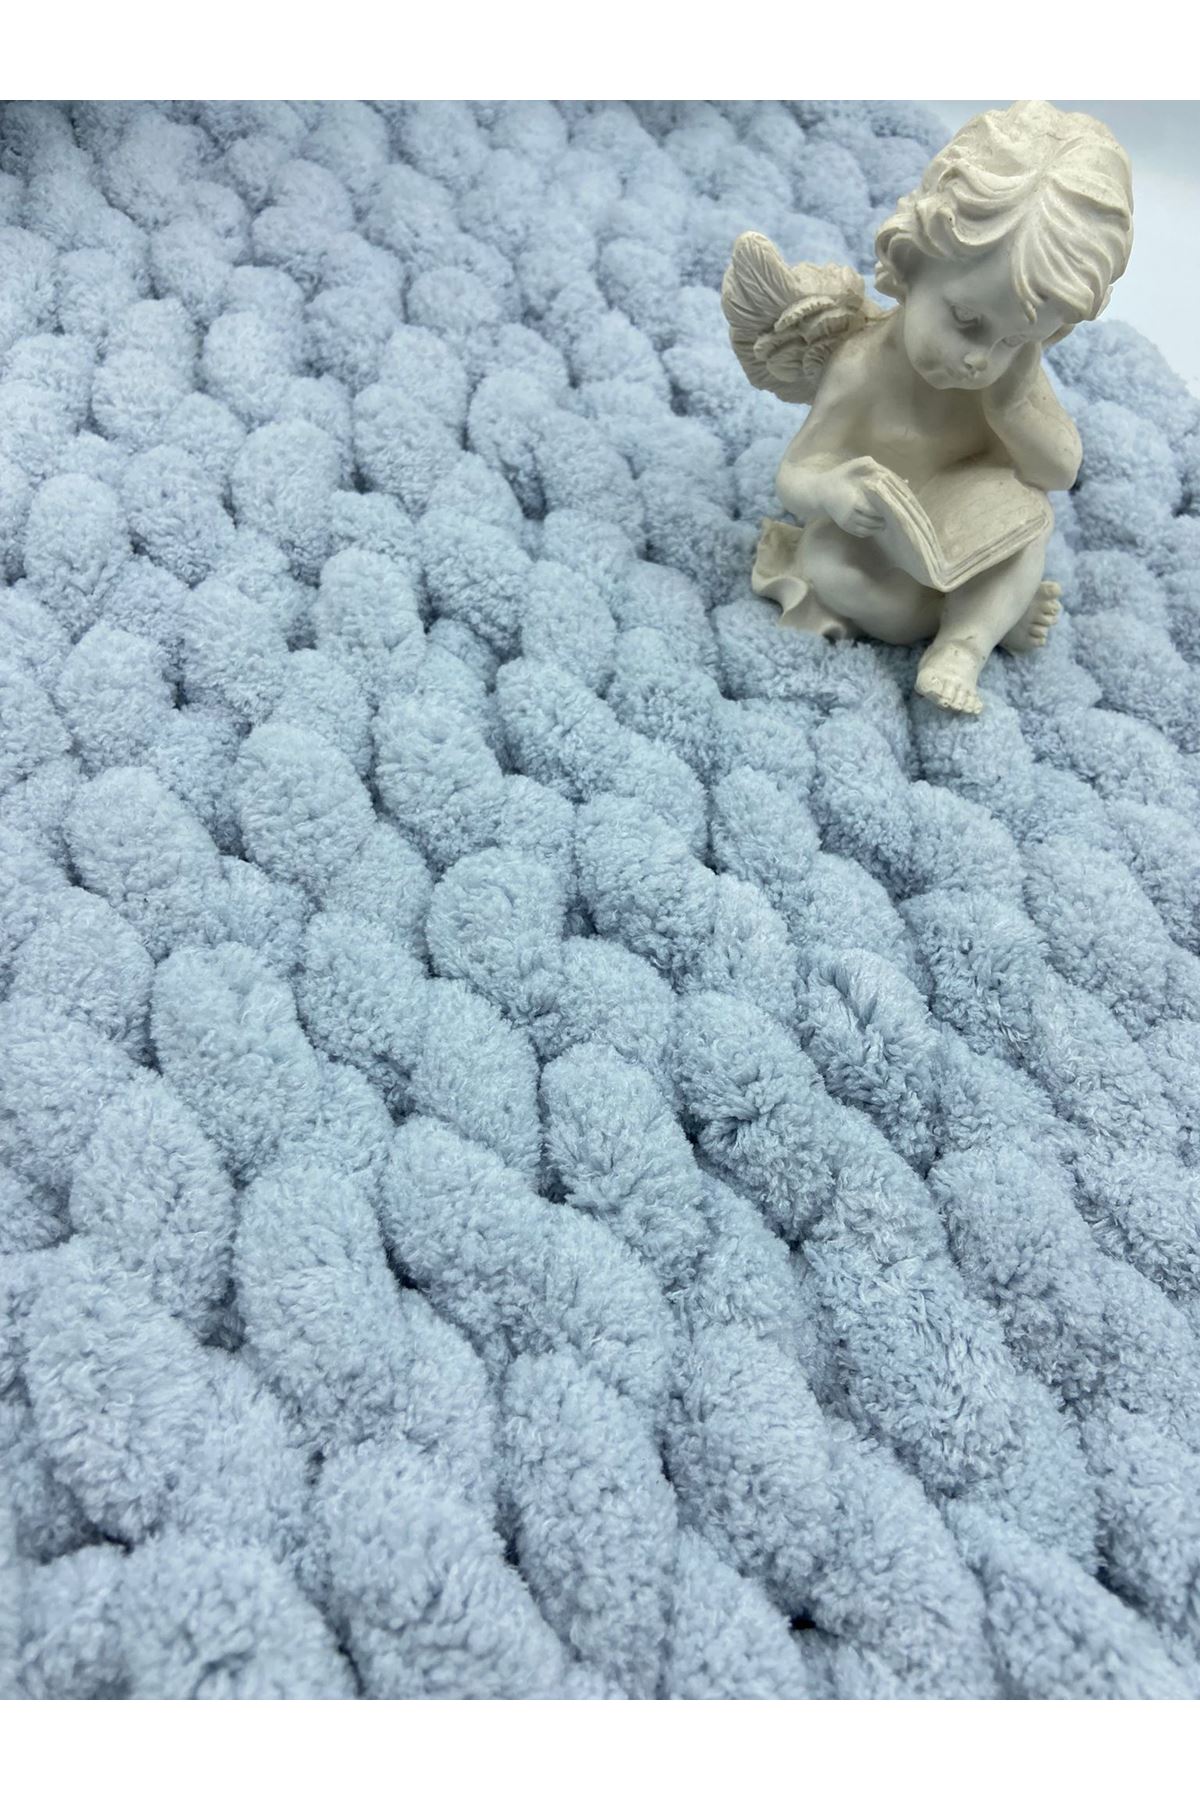 Lady Yarn Chunky Blanket 160 Canlı Sarı